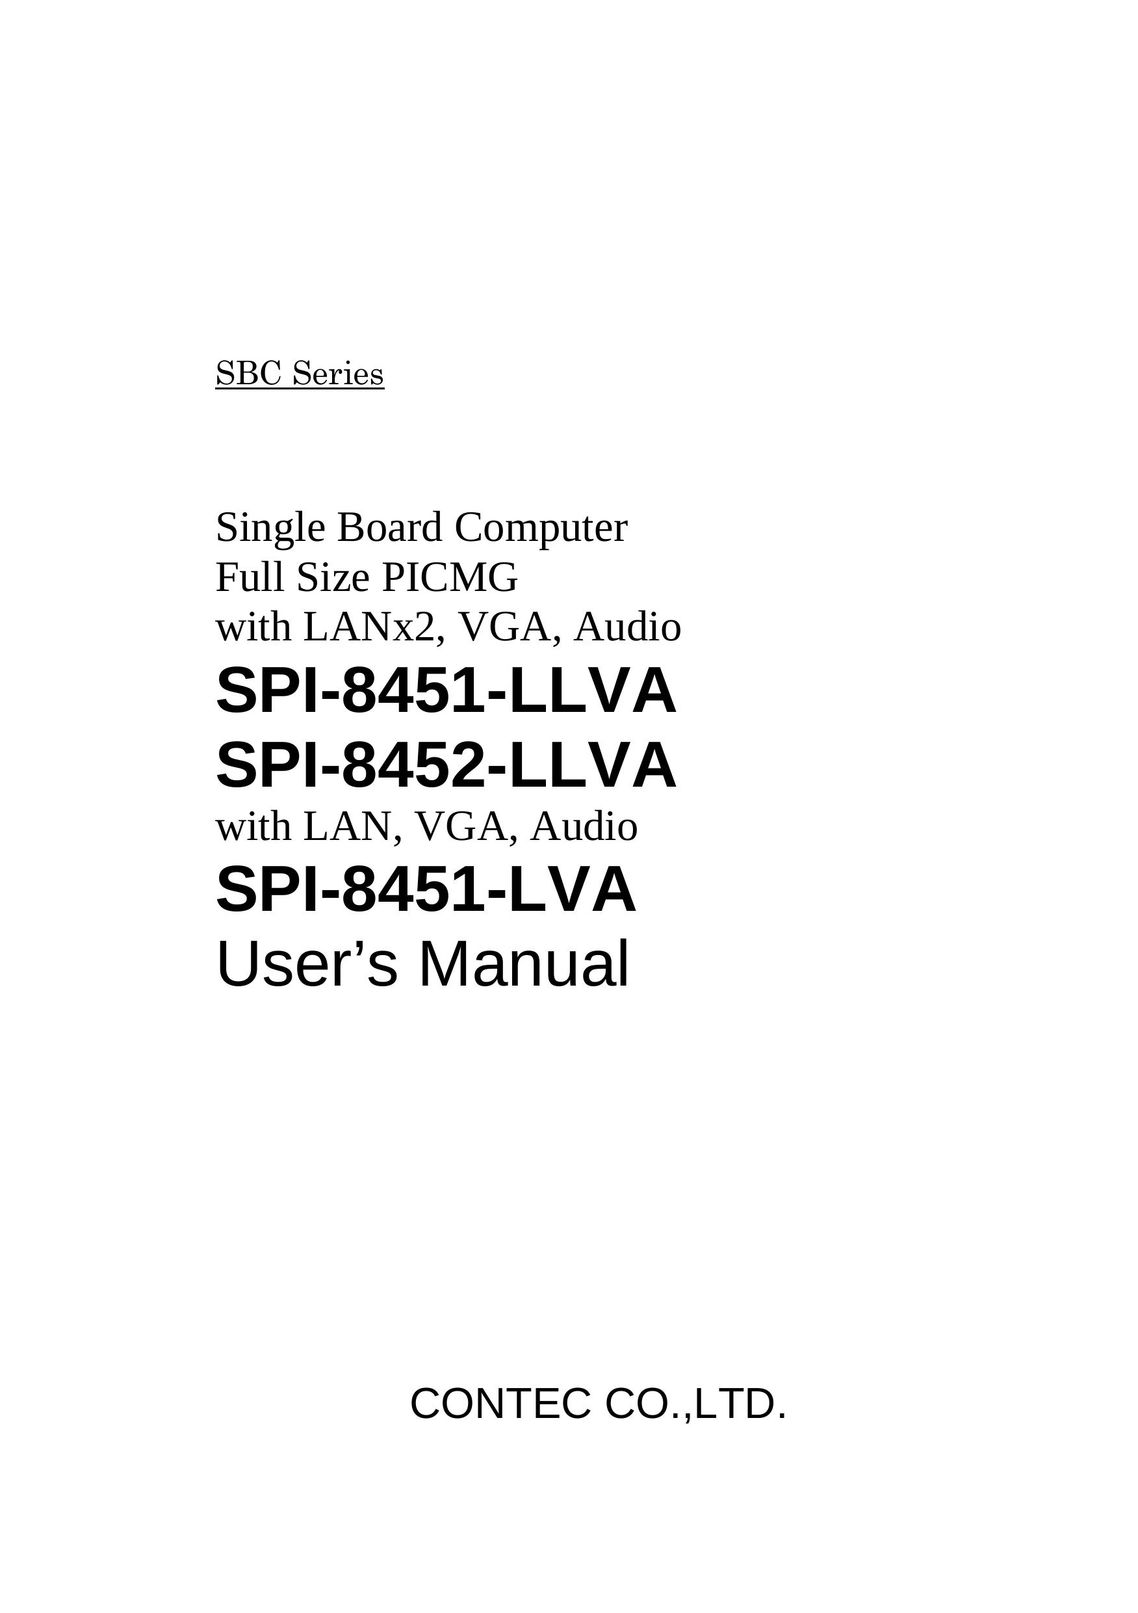 Contec SPI-8452-LLVA Computer Hardware User Manual